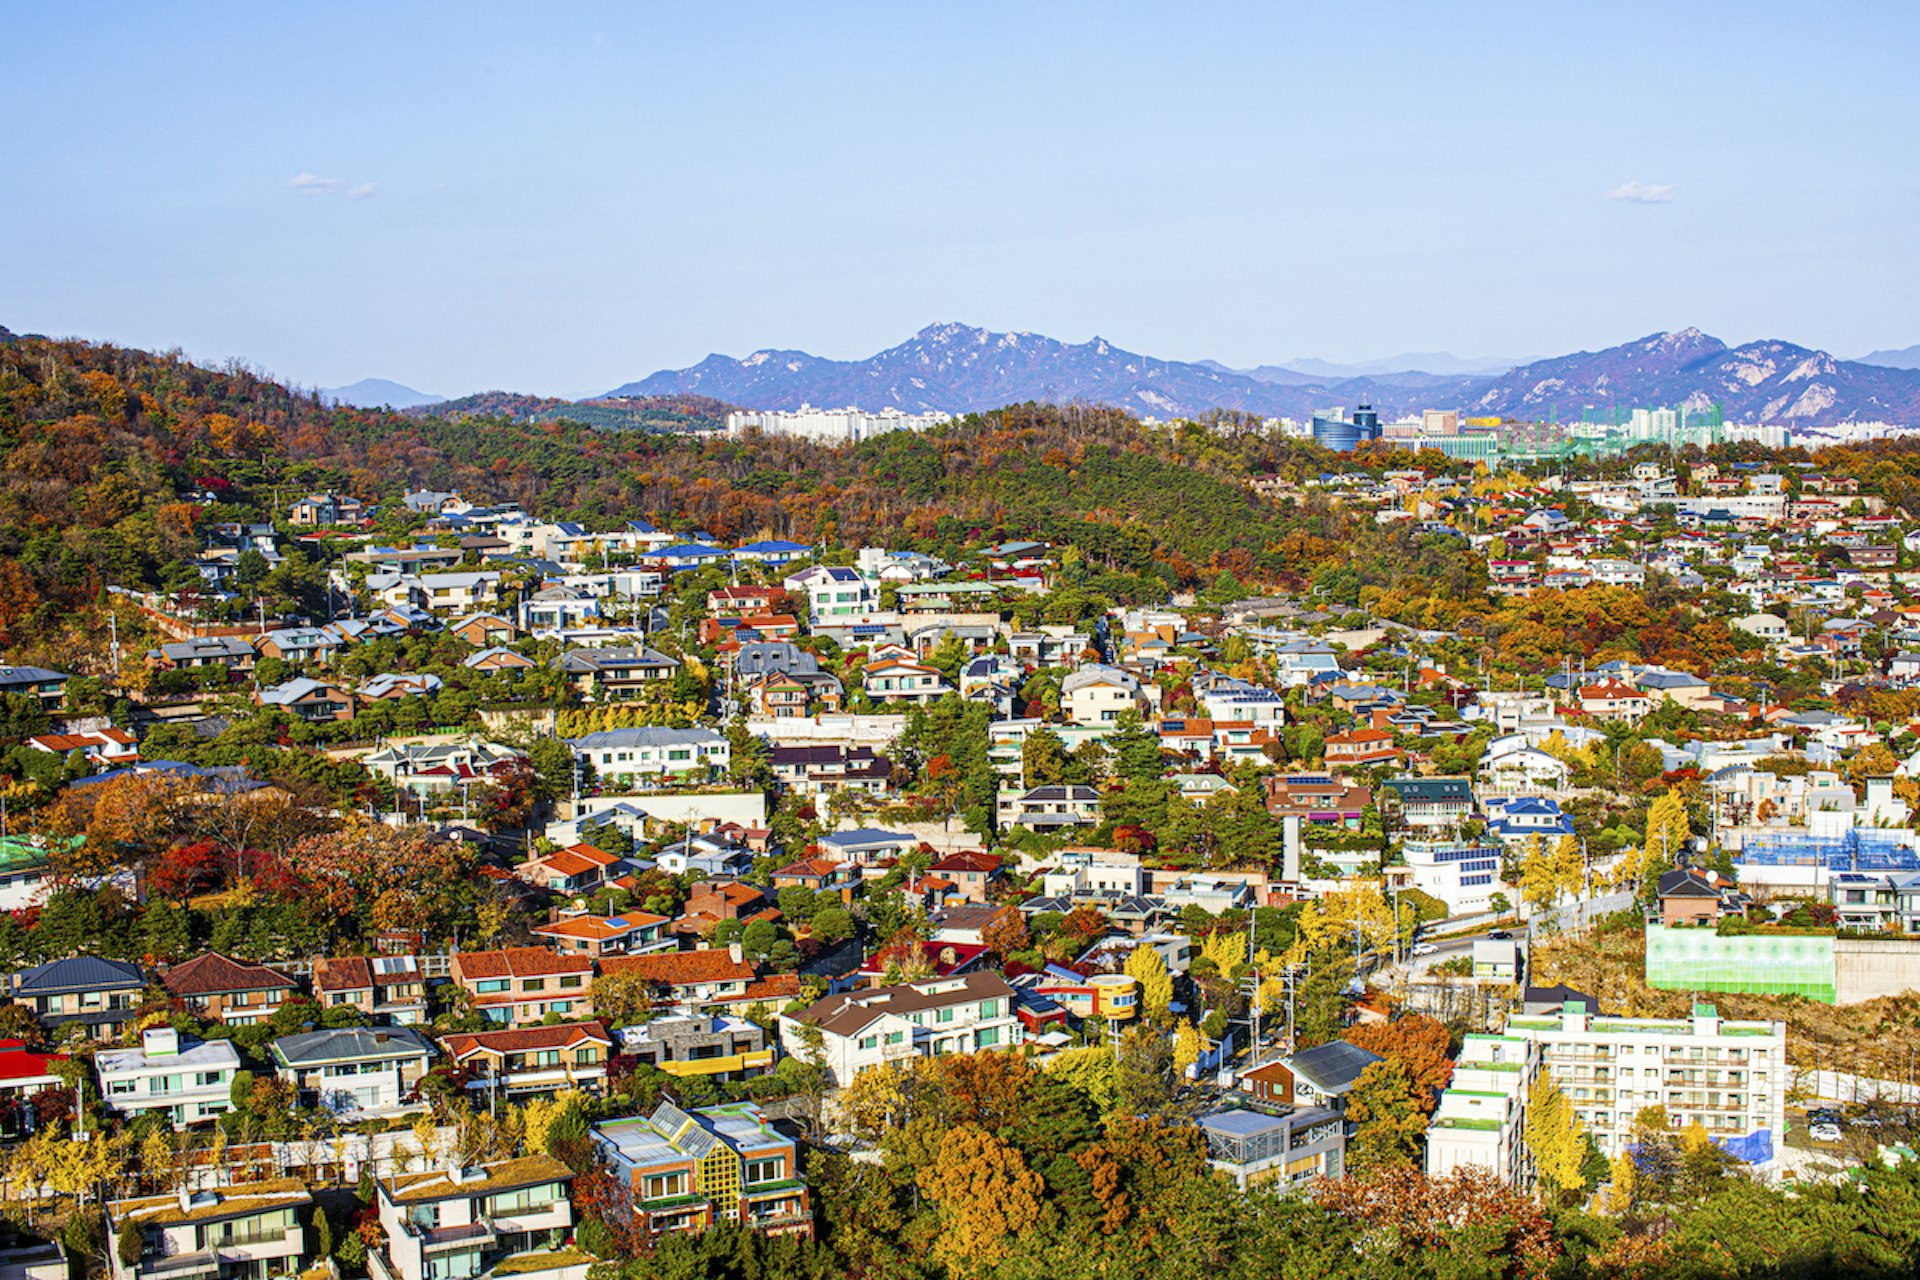 An aerial view of buildings and trees in fall in Seongbuk-dong, Seongbuk-gu, Seoul, South Korea